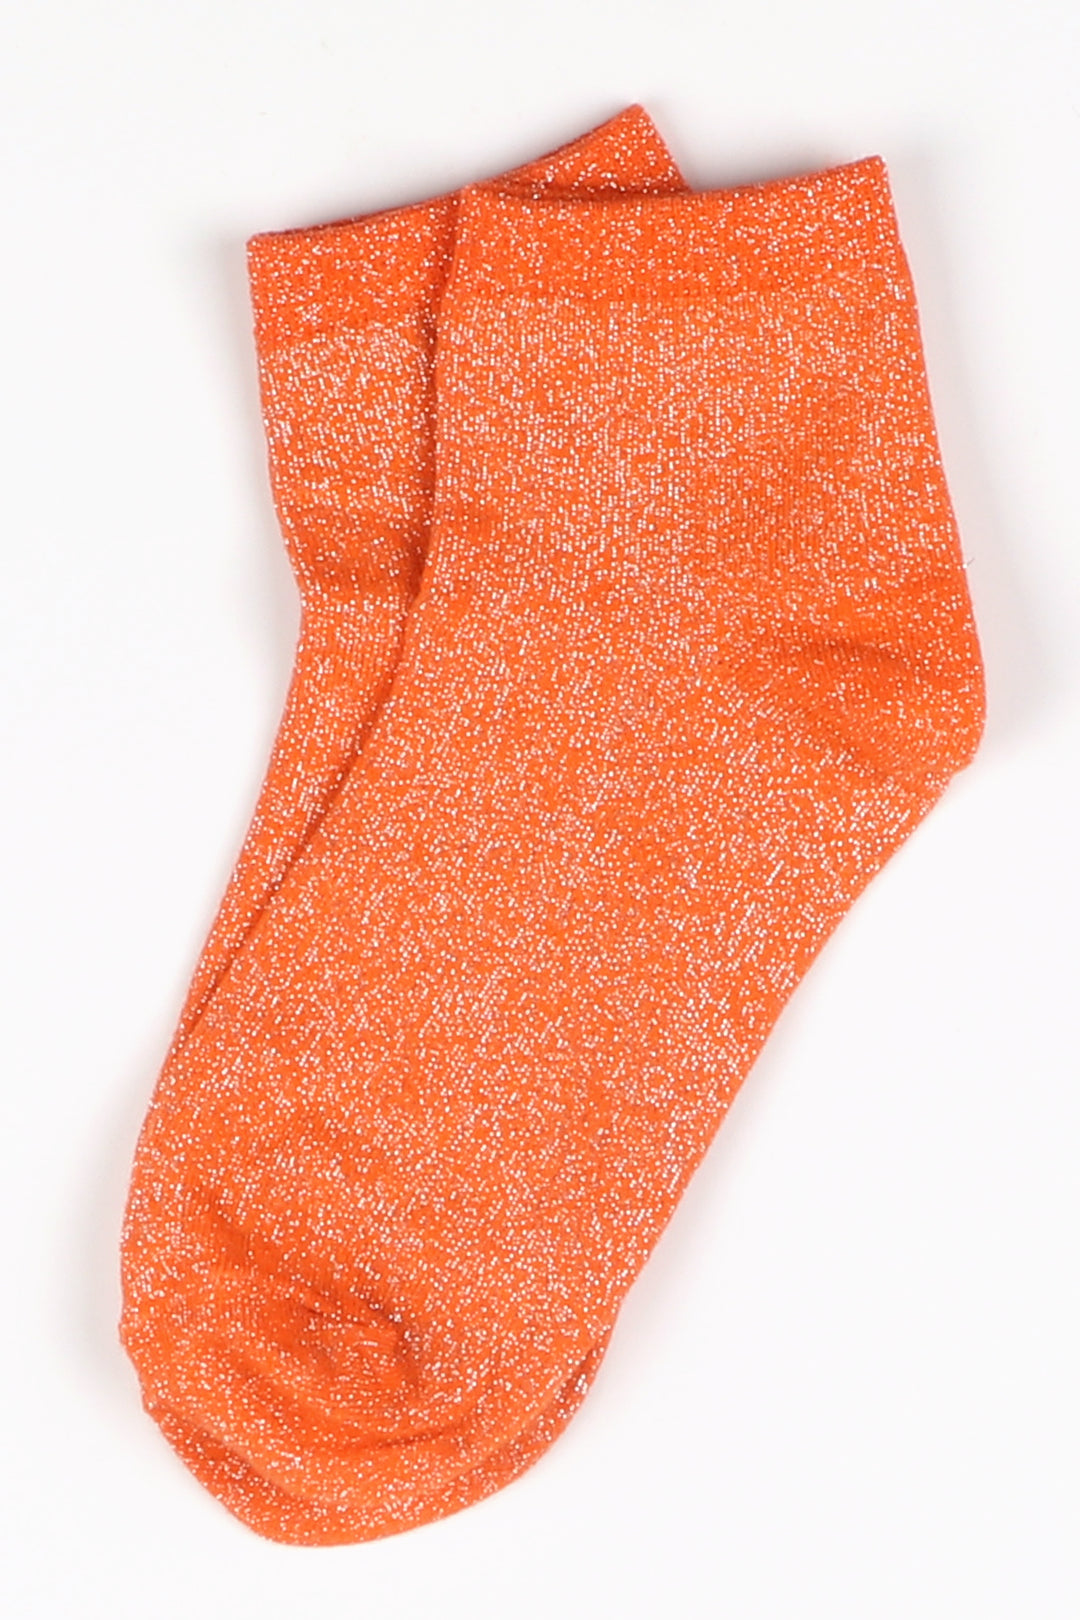 Cotton Blend All Over Glitter Anklet Socks in Orange